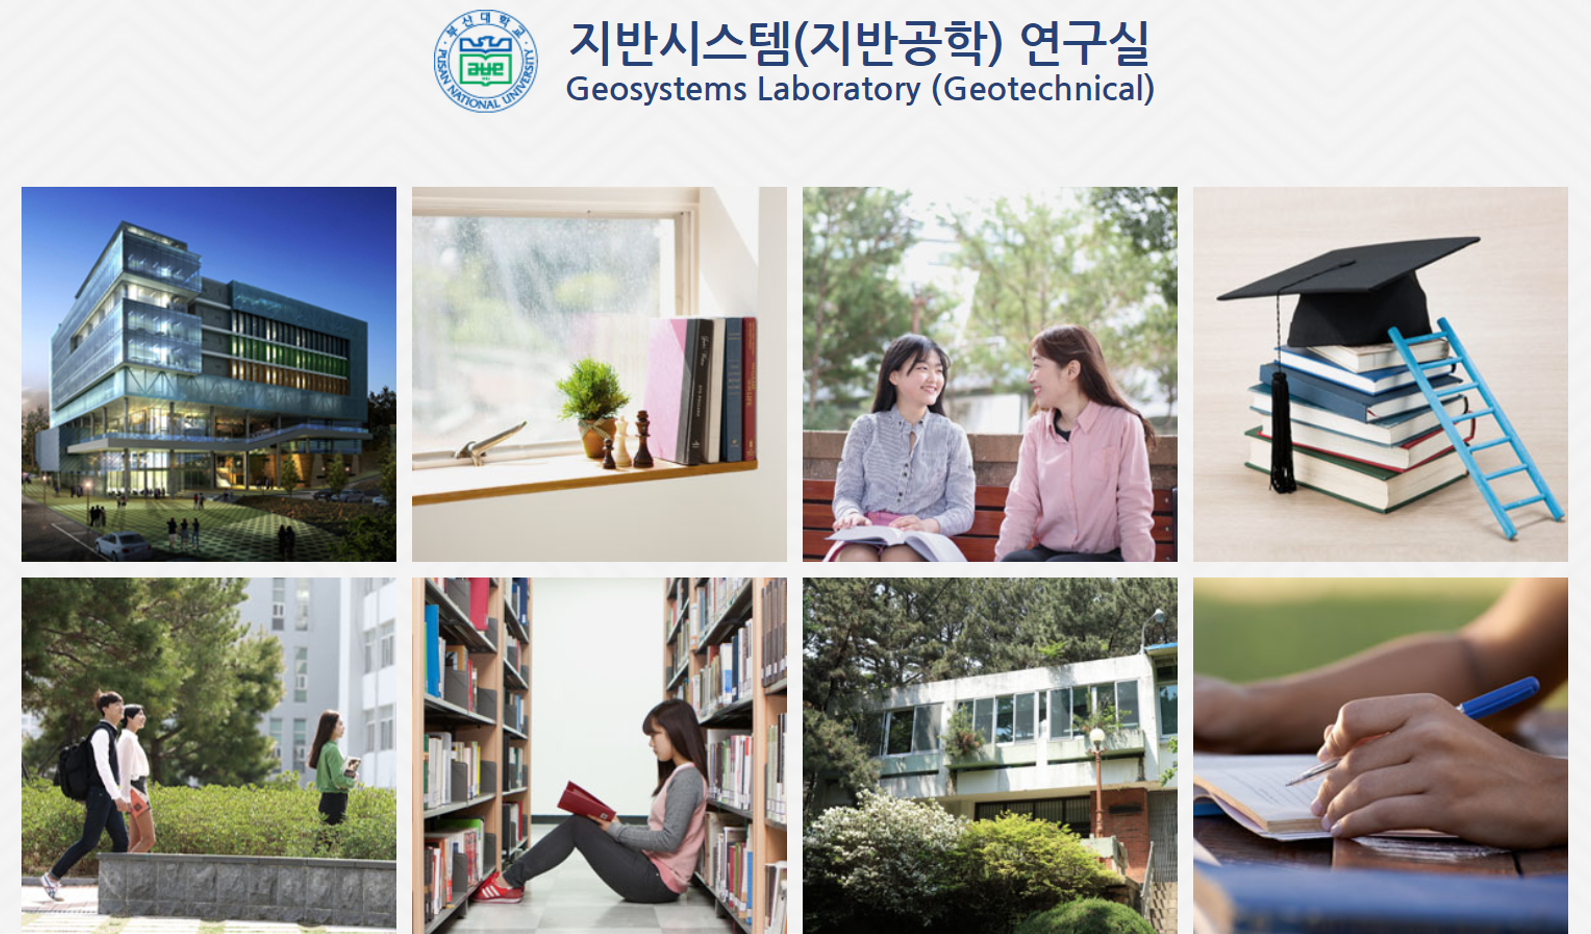 [THÔNG BÁO] Học bổng -Master/PhD Pusan National University (PNU)- 2020 – Đại học Quốc gia Pusan, Hàn Quốc